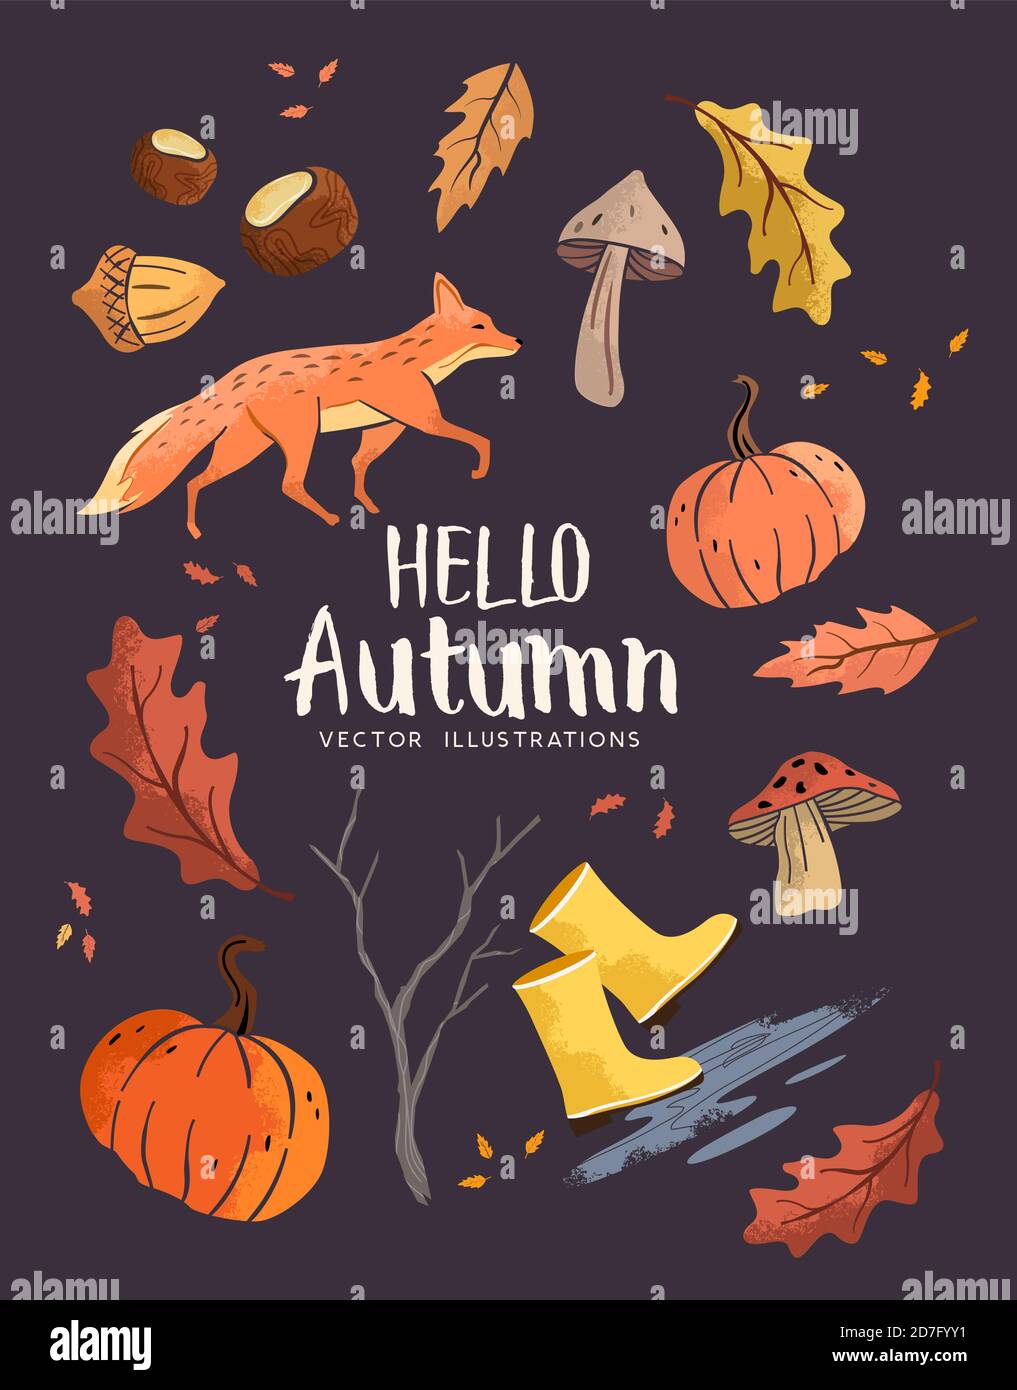 Herbst Hintergrund saisonale Elemente mit Baum Blätter, Herbst Vektor-Illustration Stock Vektor